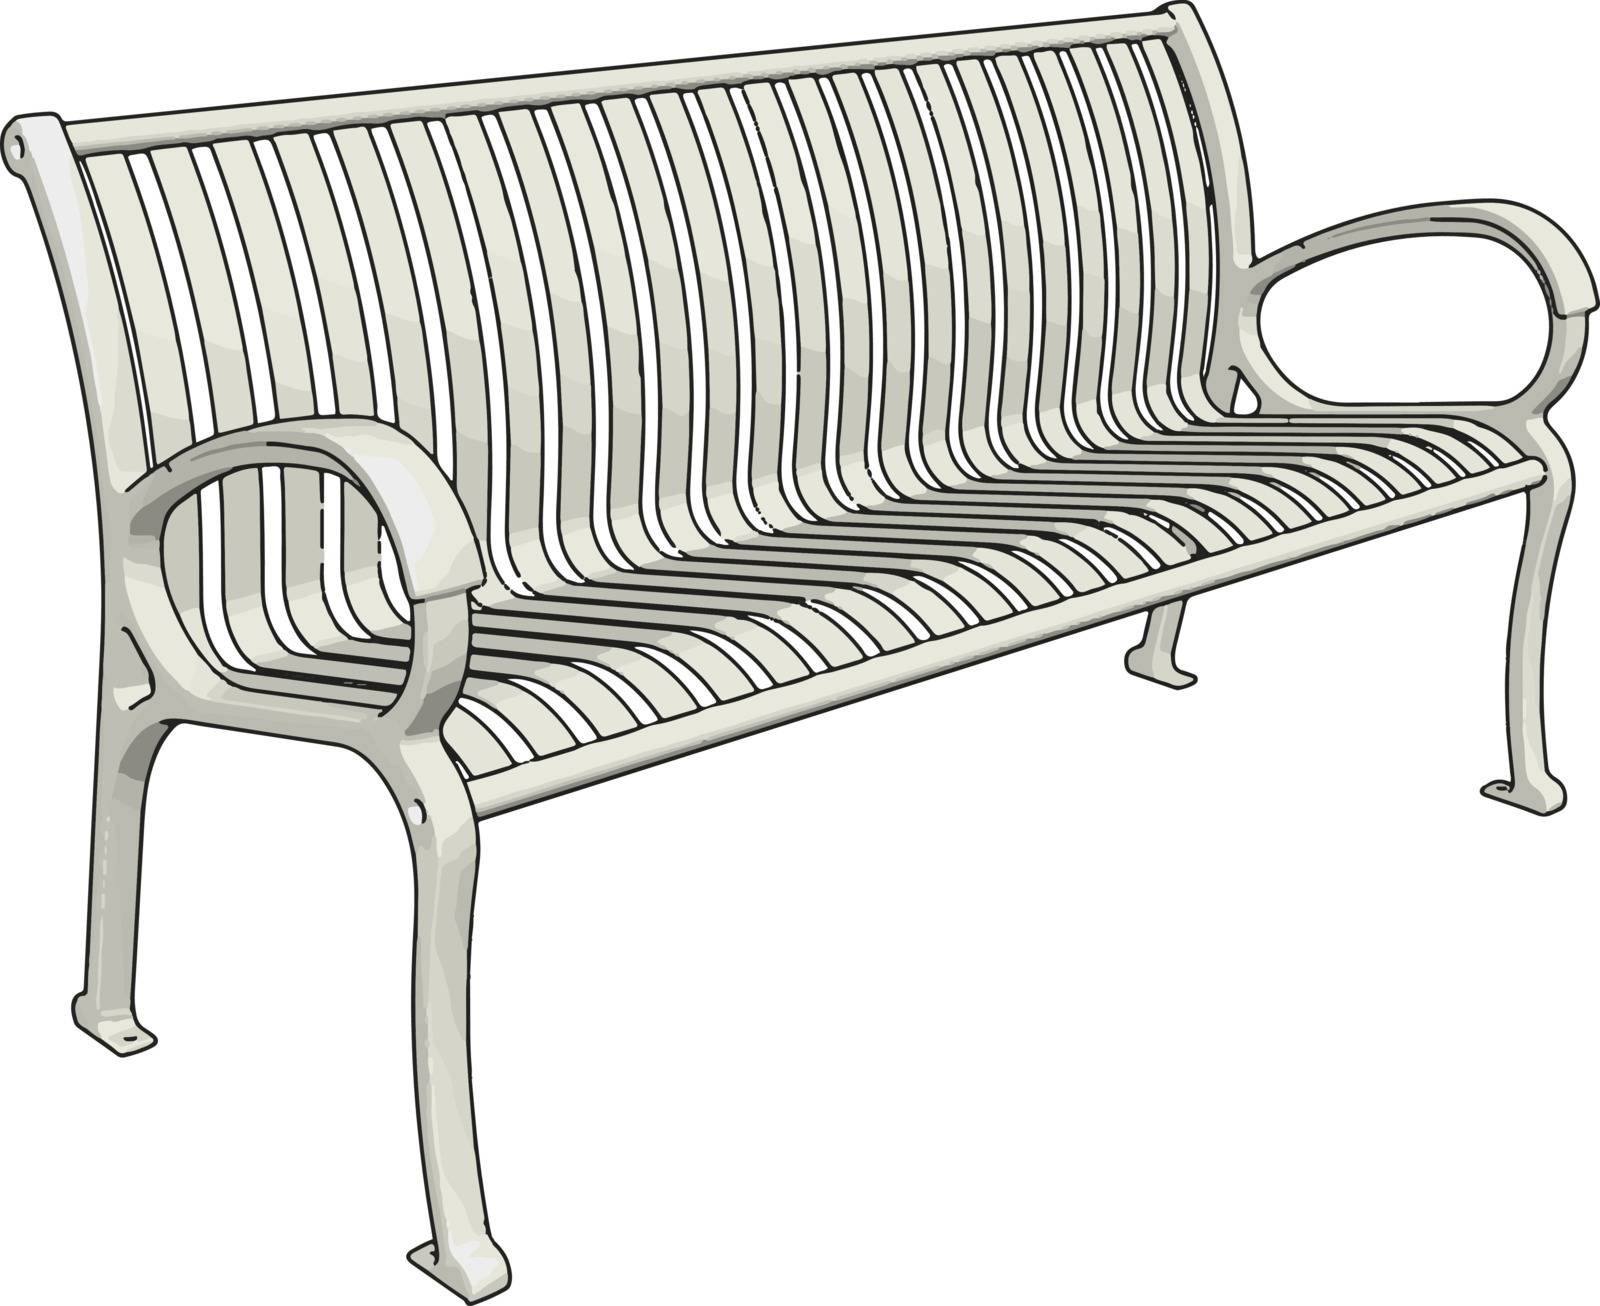 White bench, illustration, vector on white background.